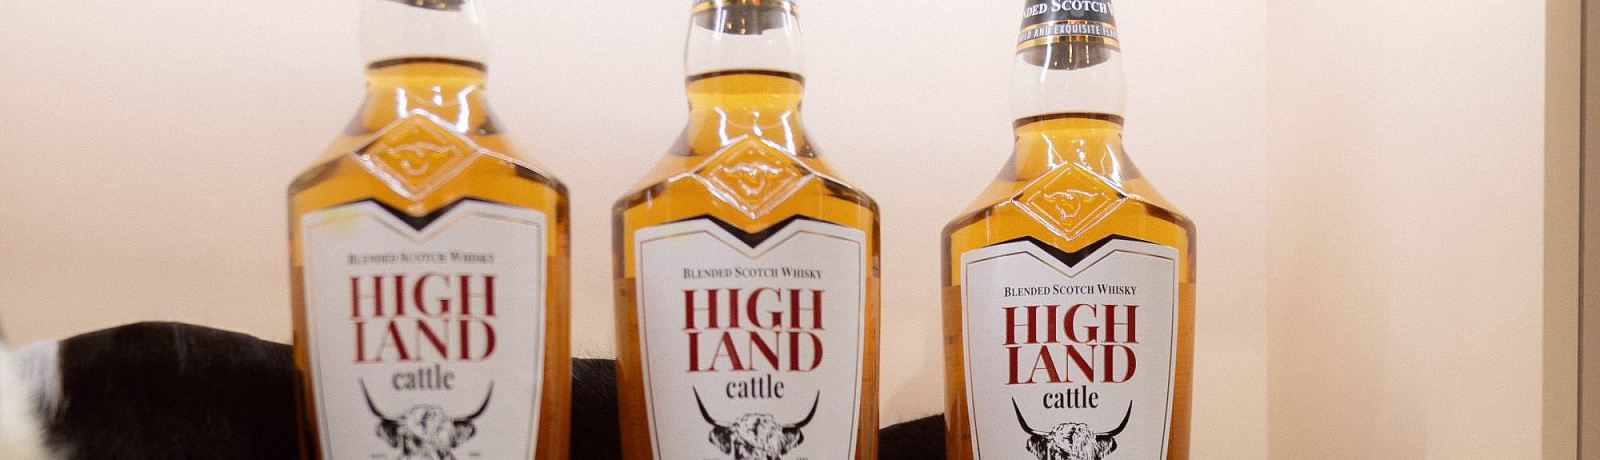 Свобода быть: попробуйте шотландский виски HIGHLAND CATTLE